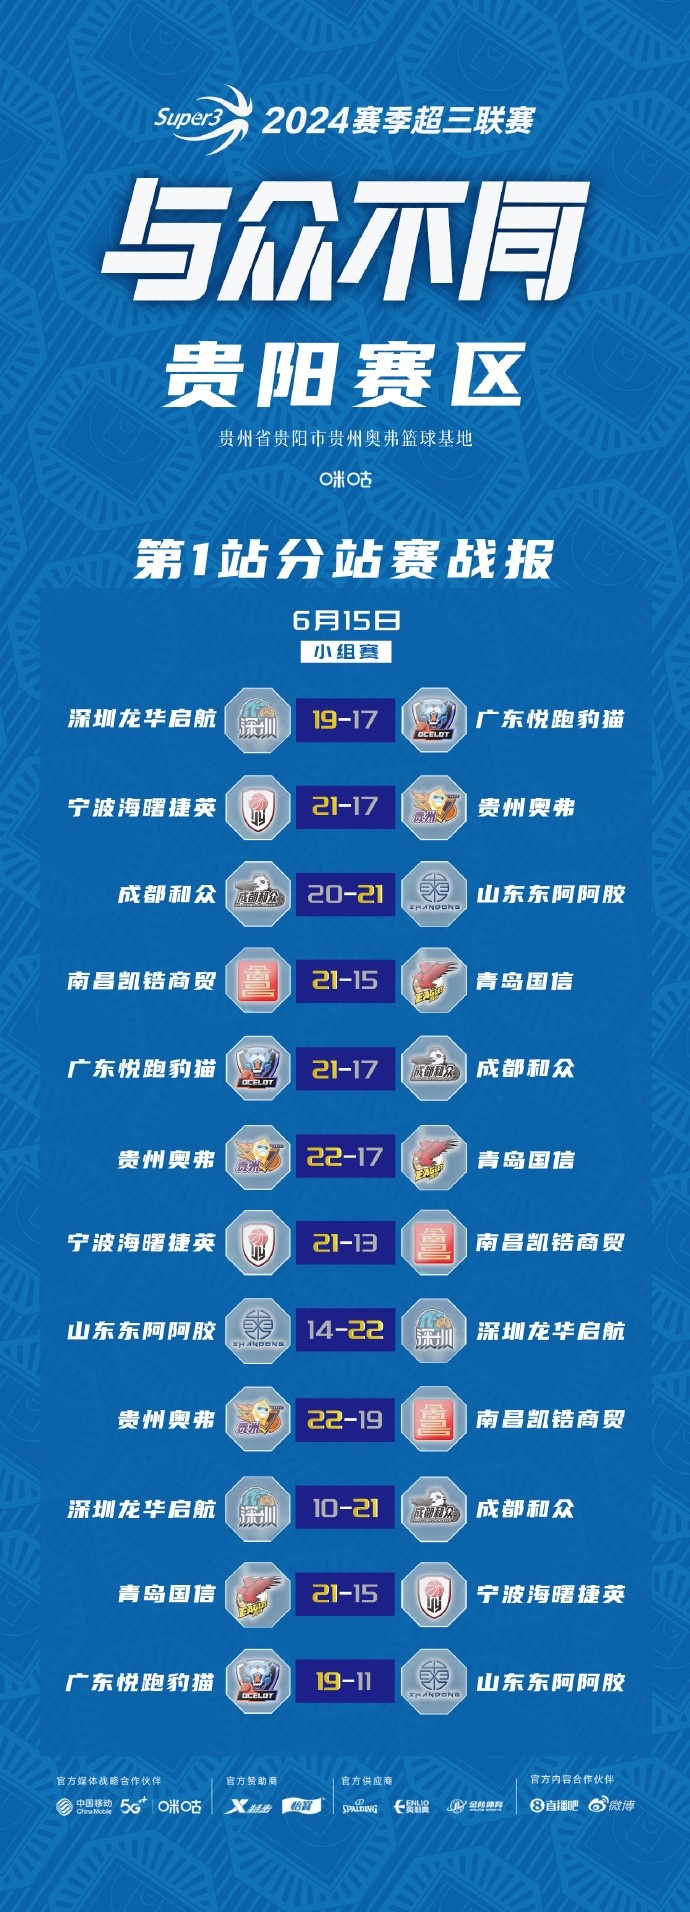 超三联赛贵阳	、武汉赛区今日结束小组赛 明天进入淘汰赛阶段